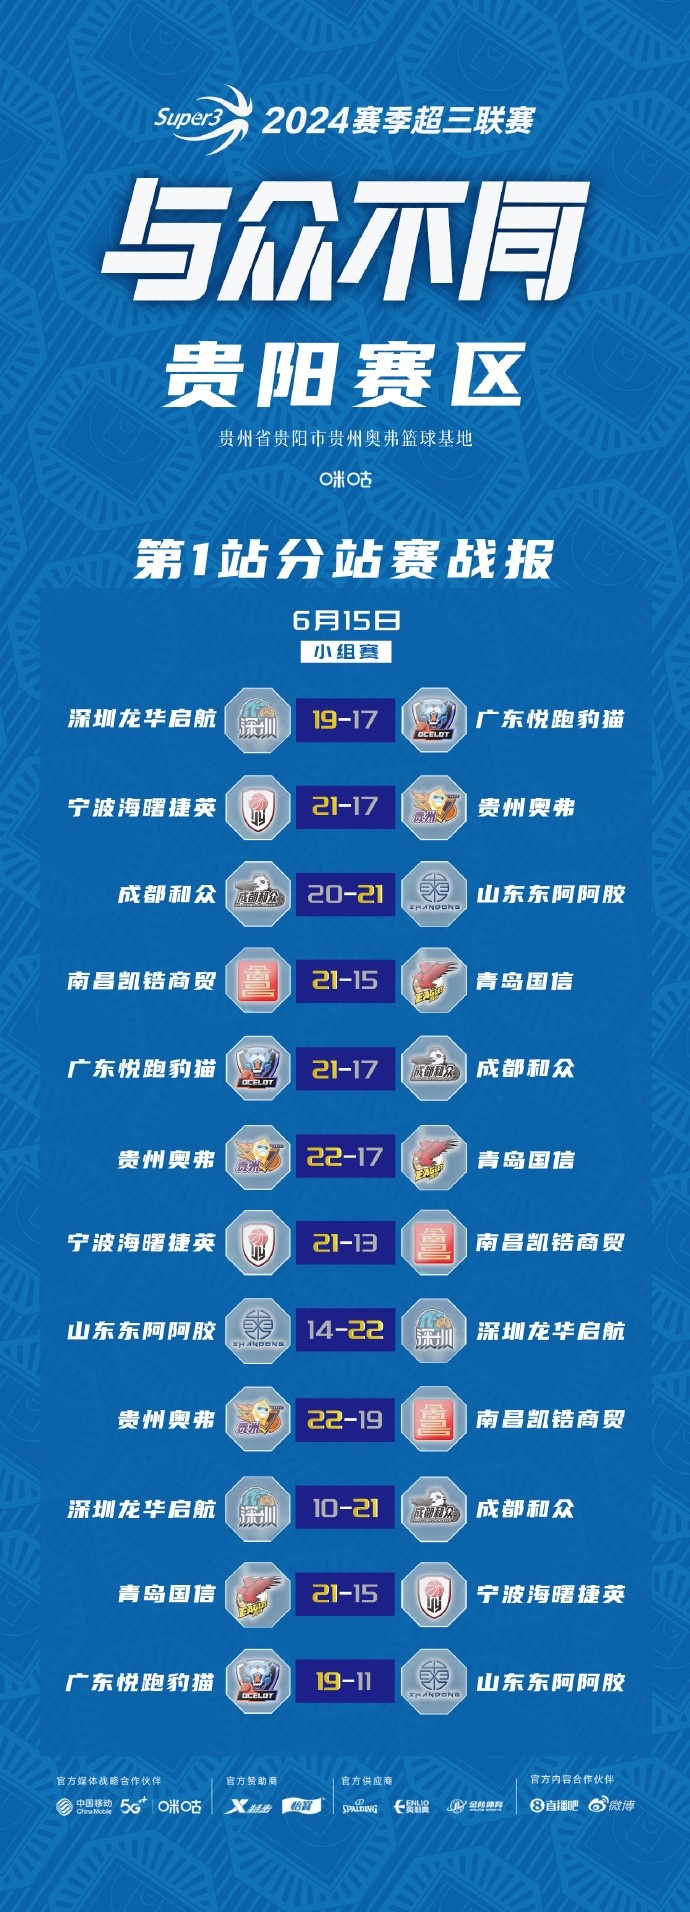 超三联赛贵阳	、武汉赛区今日结束小组赛 明天进入淘汰赛阶段